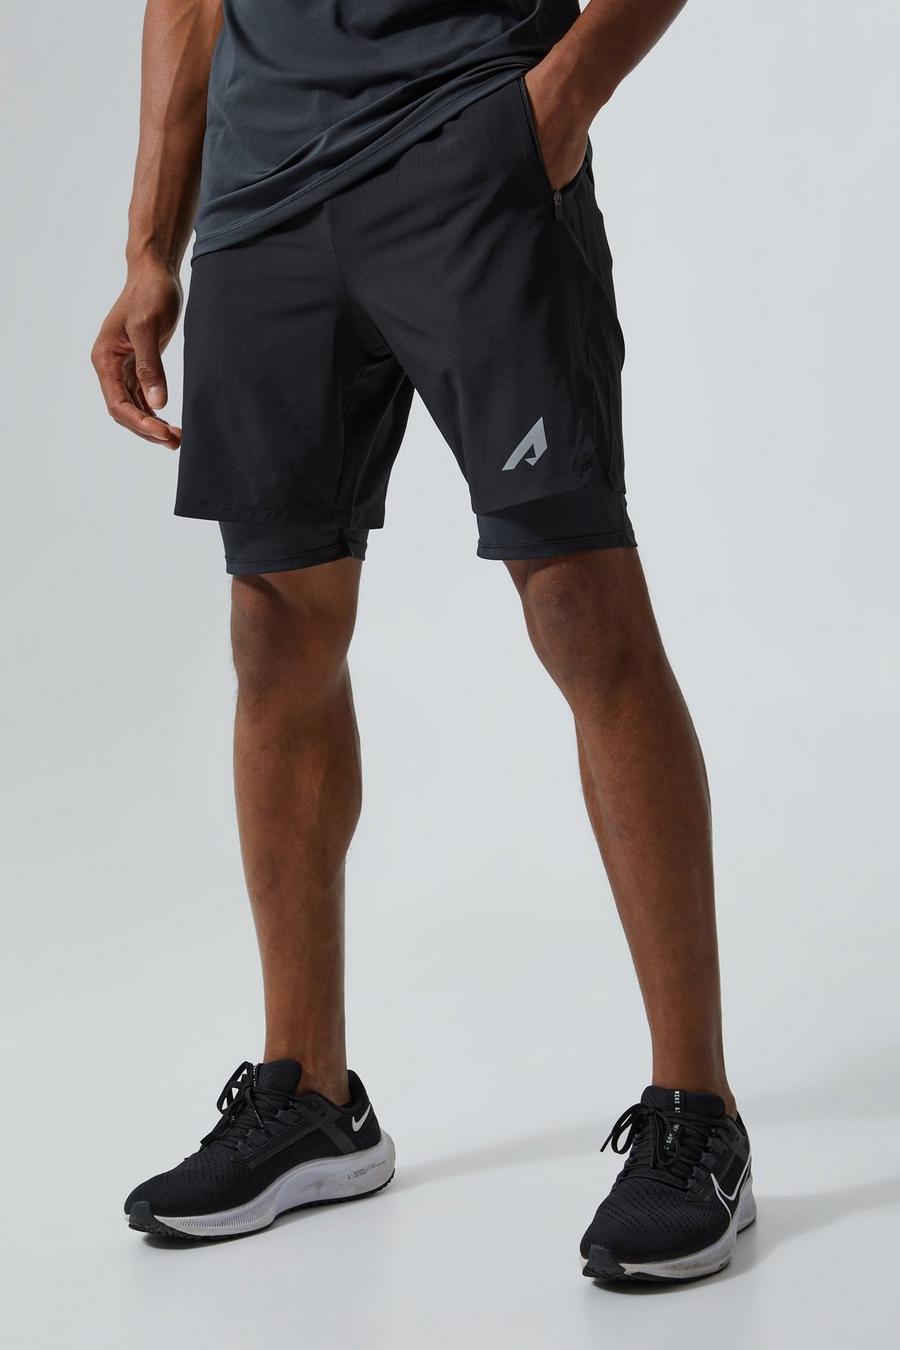 Reflektierende 2-in-1 Active Shorts, Black